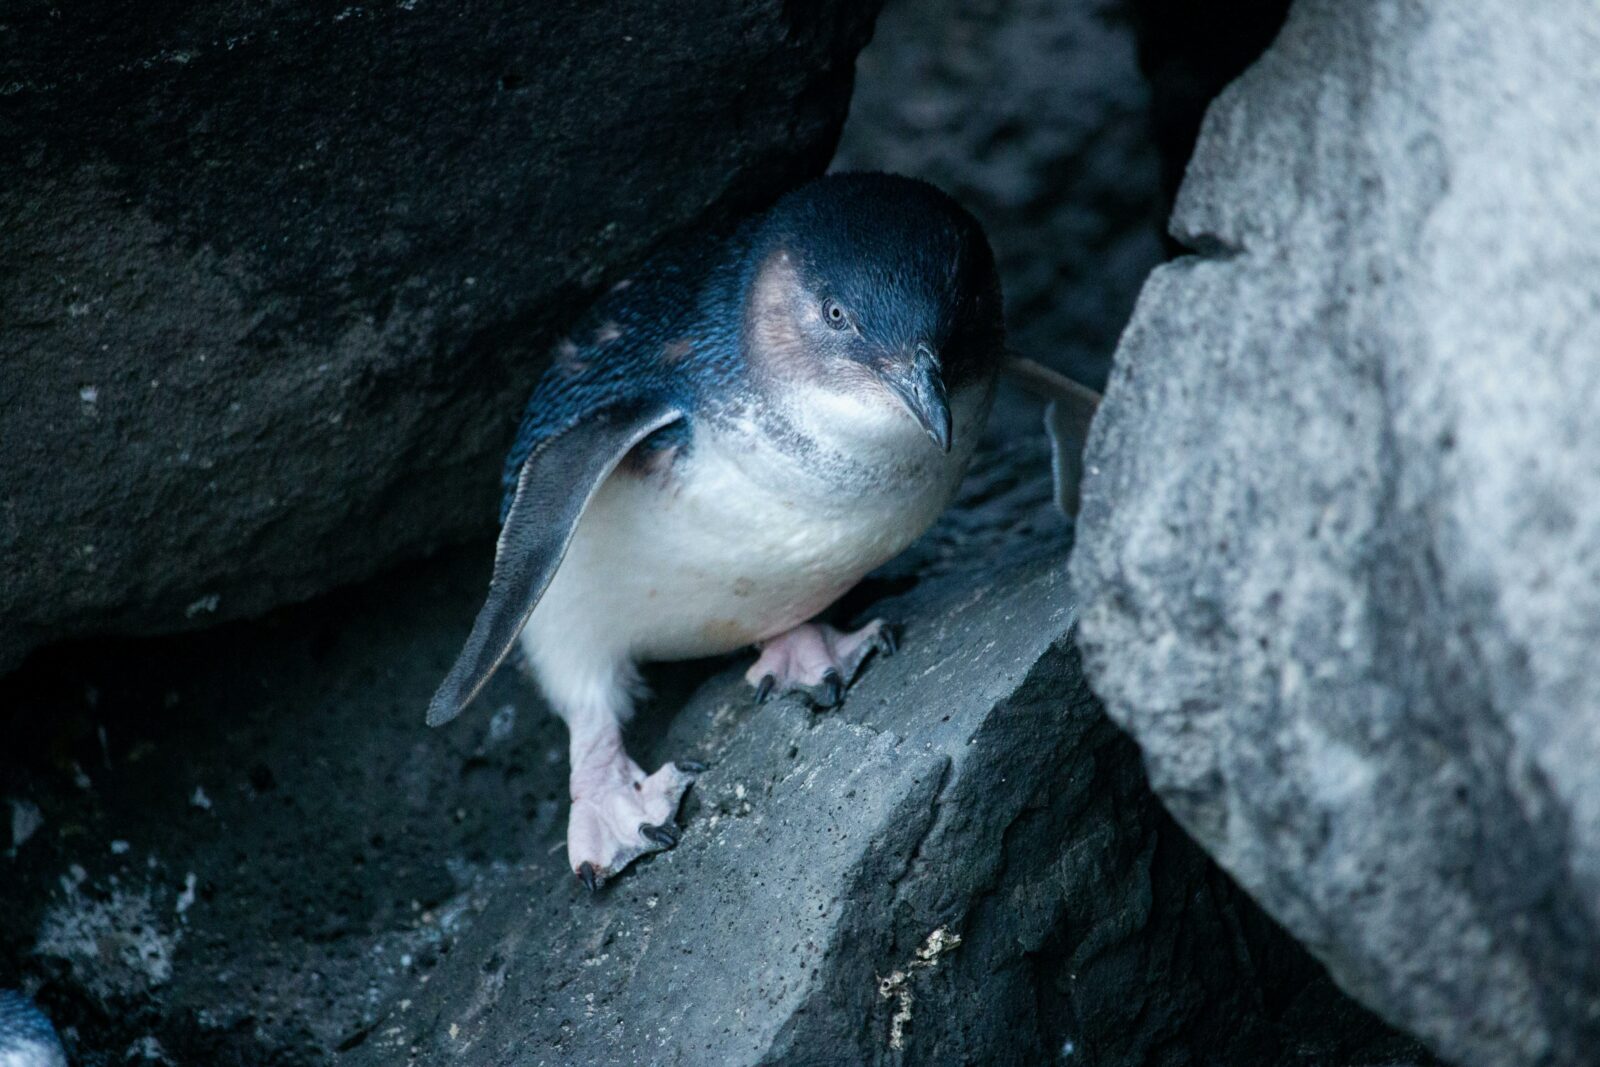 Penguin in amongst the rocks.